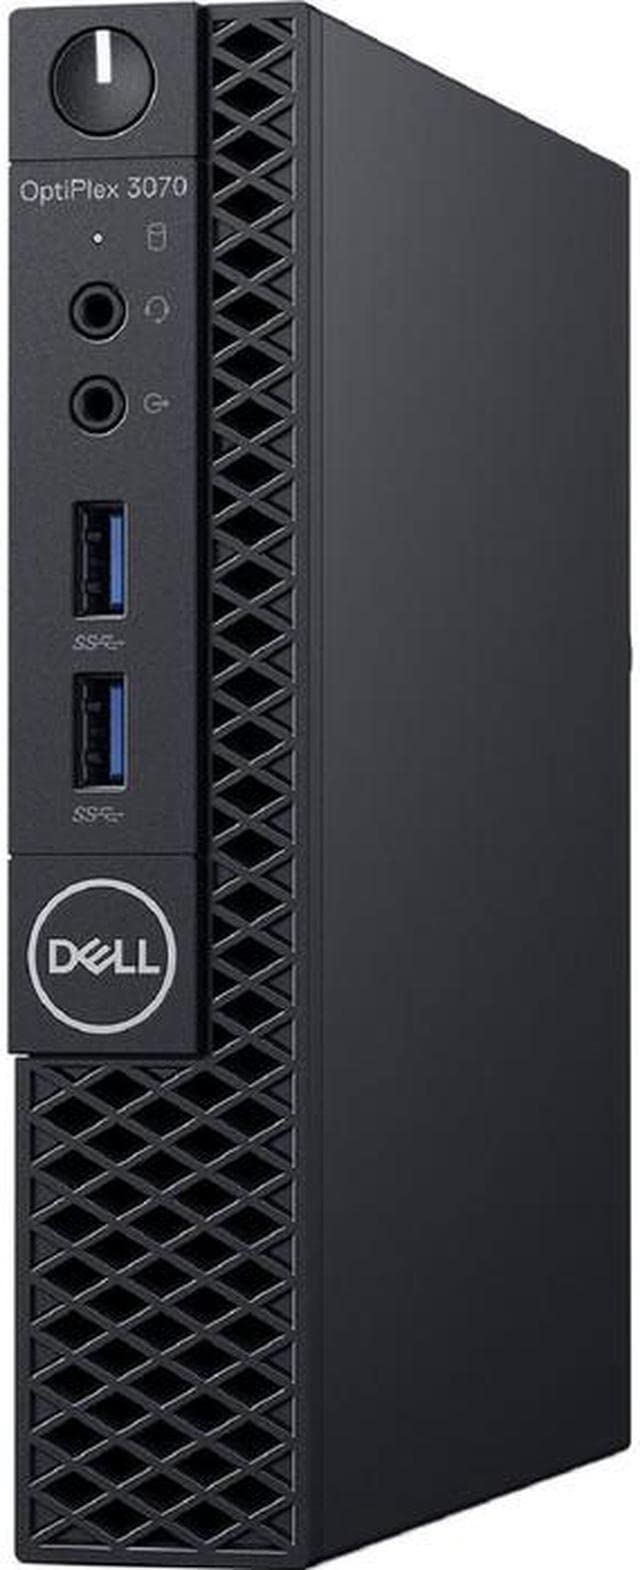 Dell Optiplex 3070 USFF, i5-8500T, 8GB RAM, 128GB SSD, Windows 10 Pro (Renewed)